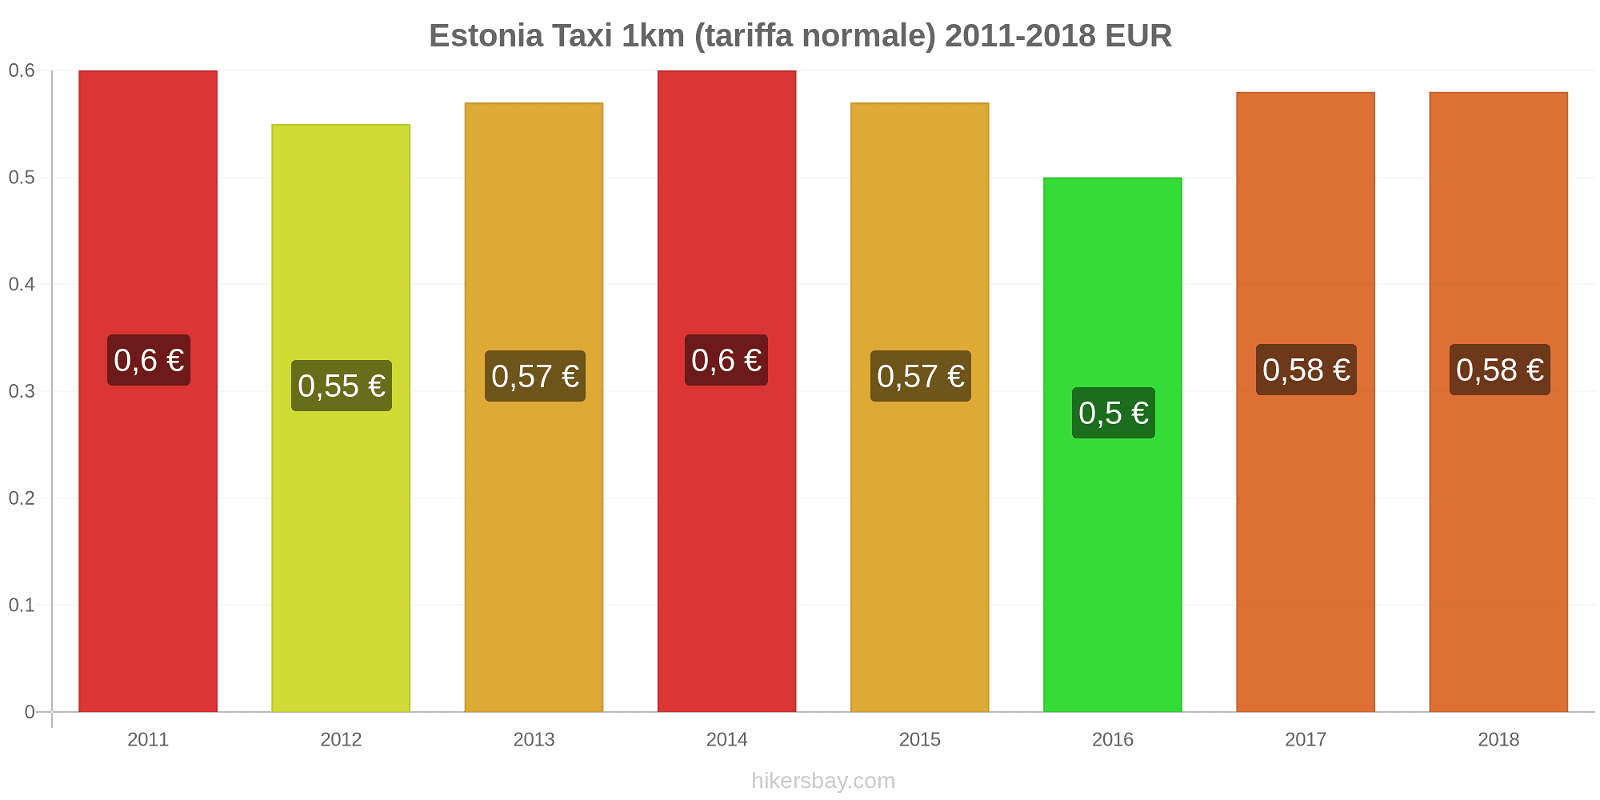 Estonia cambi di prezzo Taxi 1km (tariffa normale) hikersbay.com